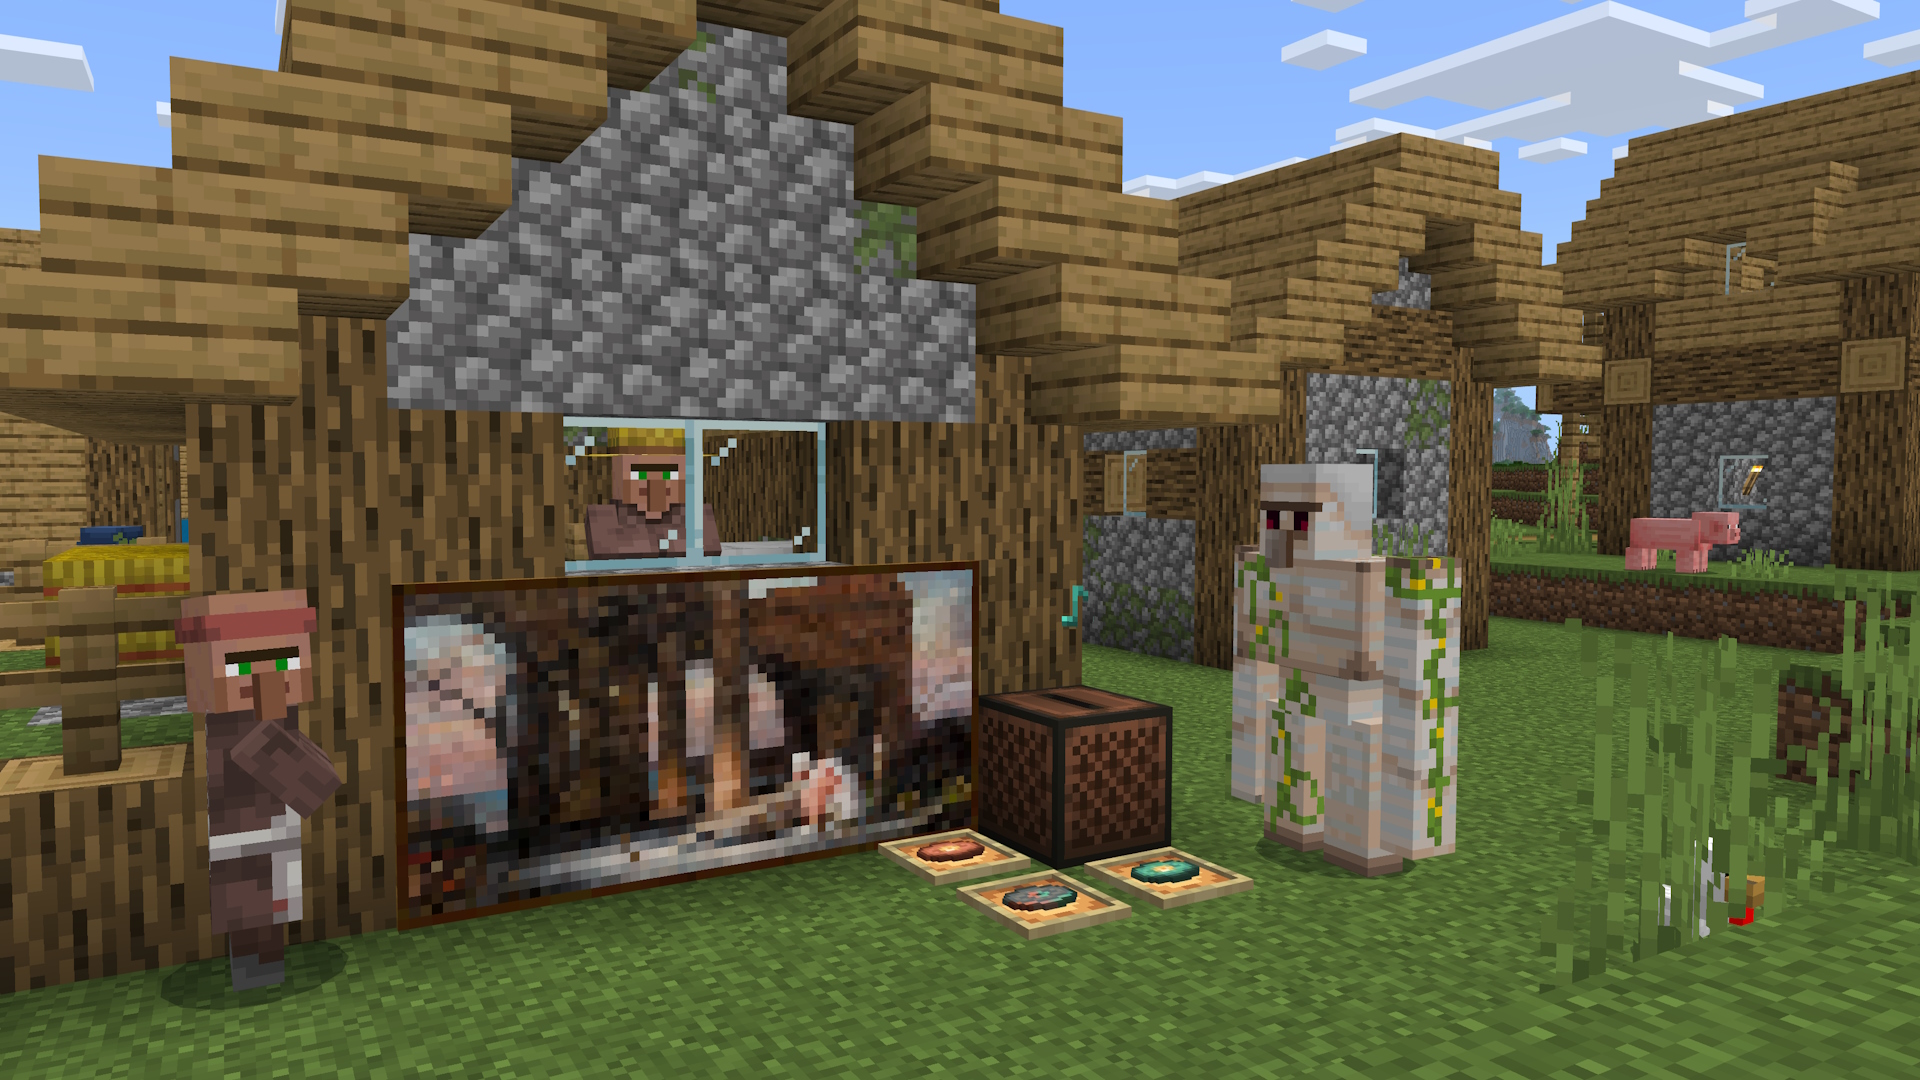 Uma casa de aldeia Minecraft, com aldeões e um golem de ferro próximo. Há uma nova pintura na parede que foi colocada por um tocador, além de uma jukebox e três novos discos de música em molduras no chão.